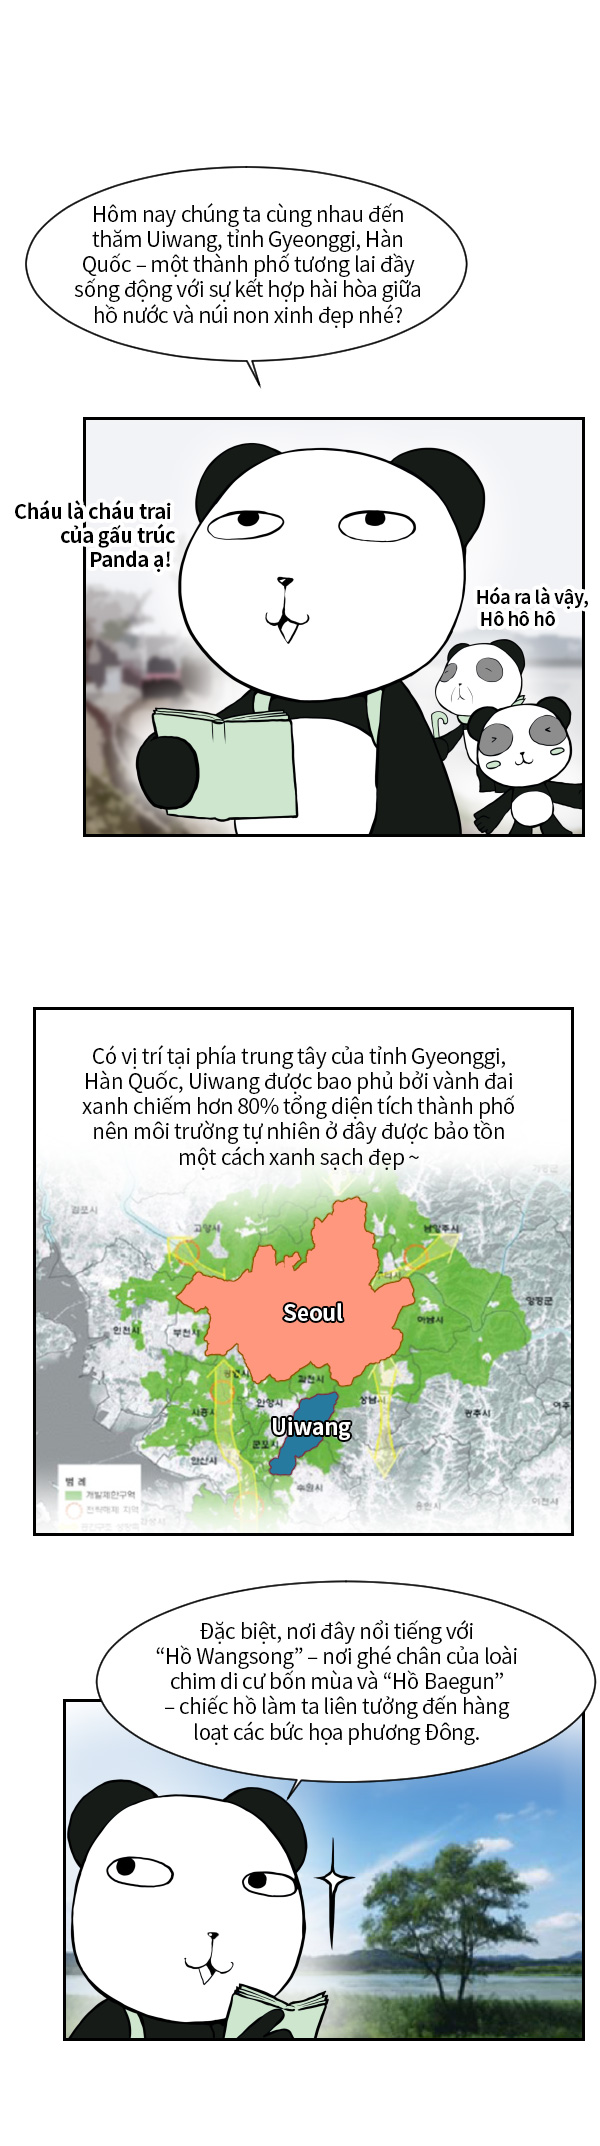 Bạn biết những gì về tỉnh Gyeonggi? 13.Uiwang-Gunpo_01